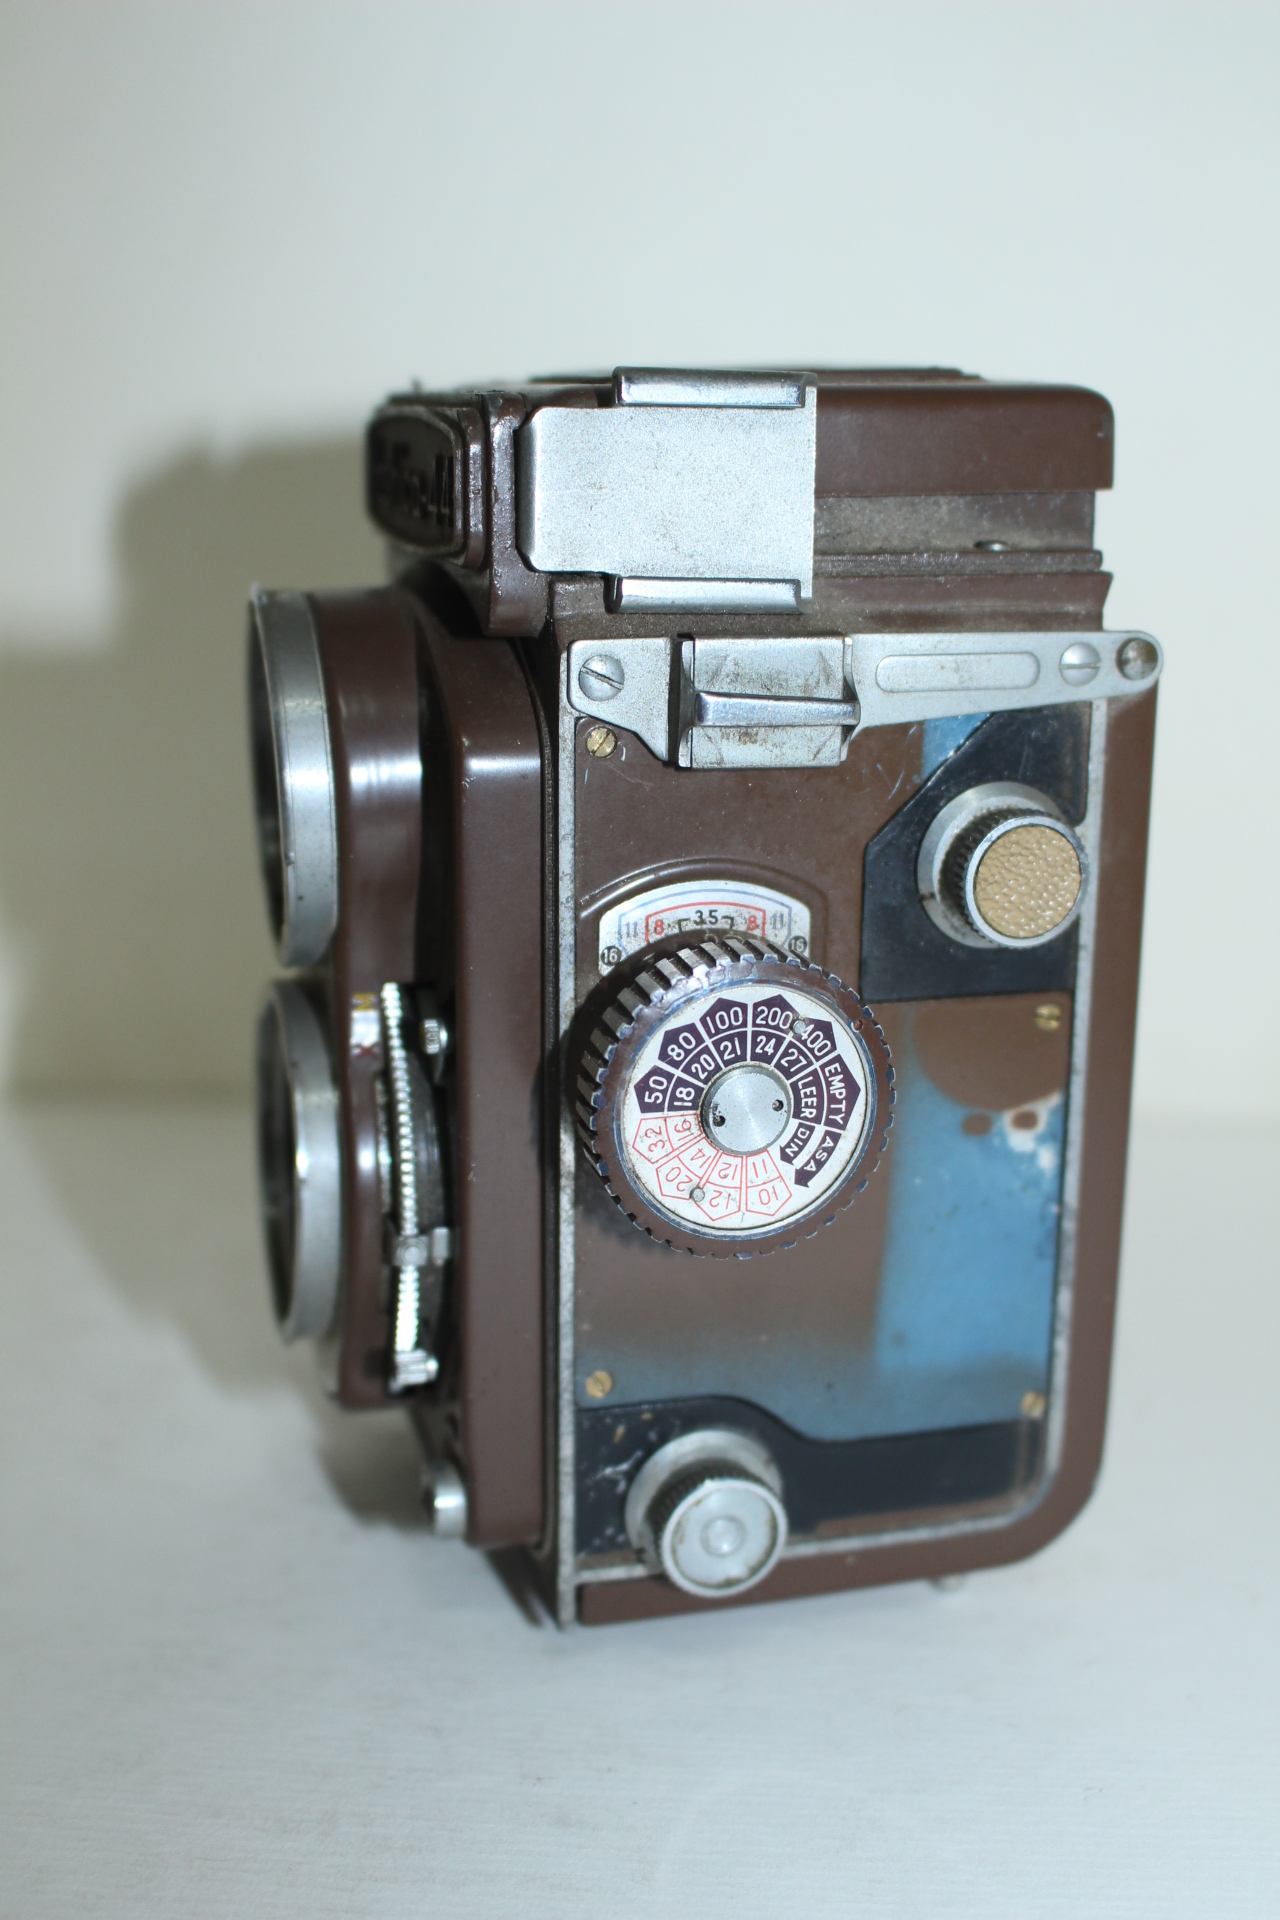 야시카-44 카메라